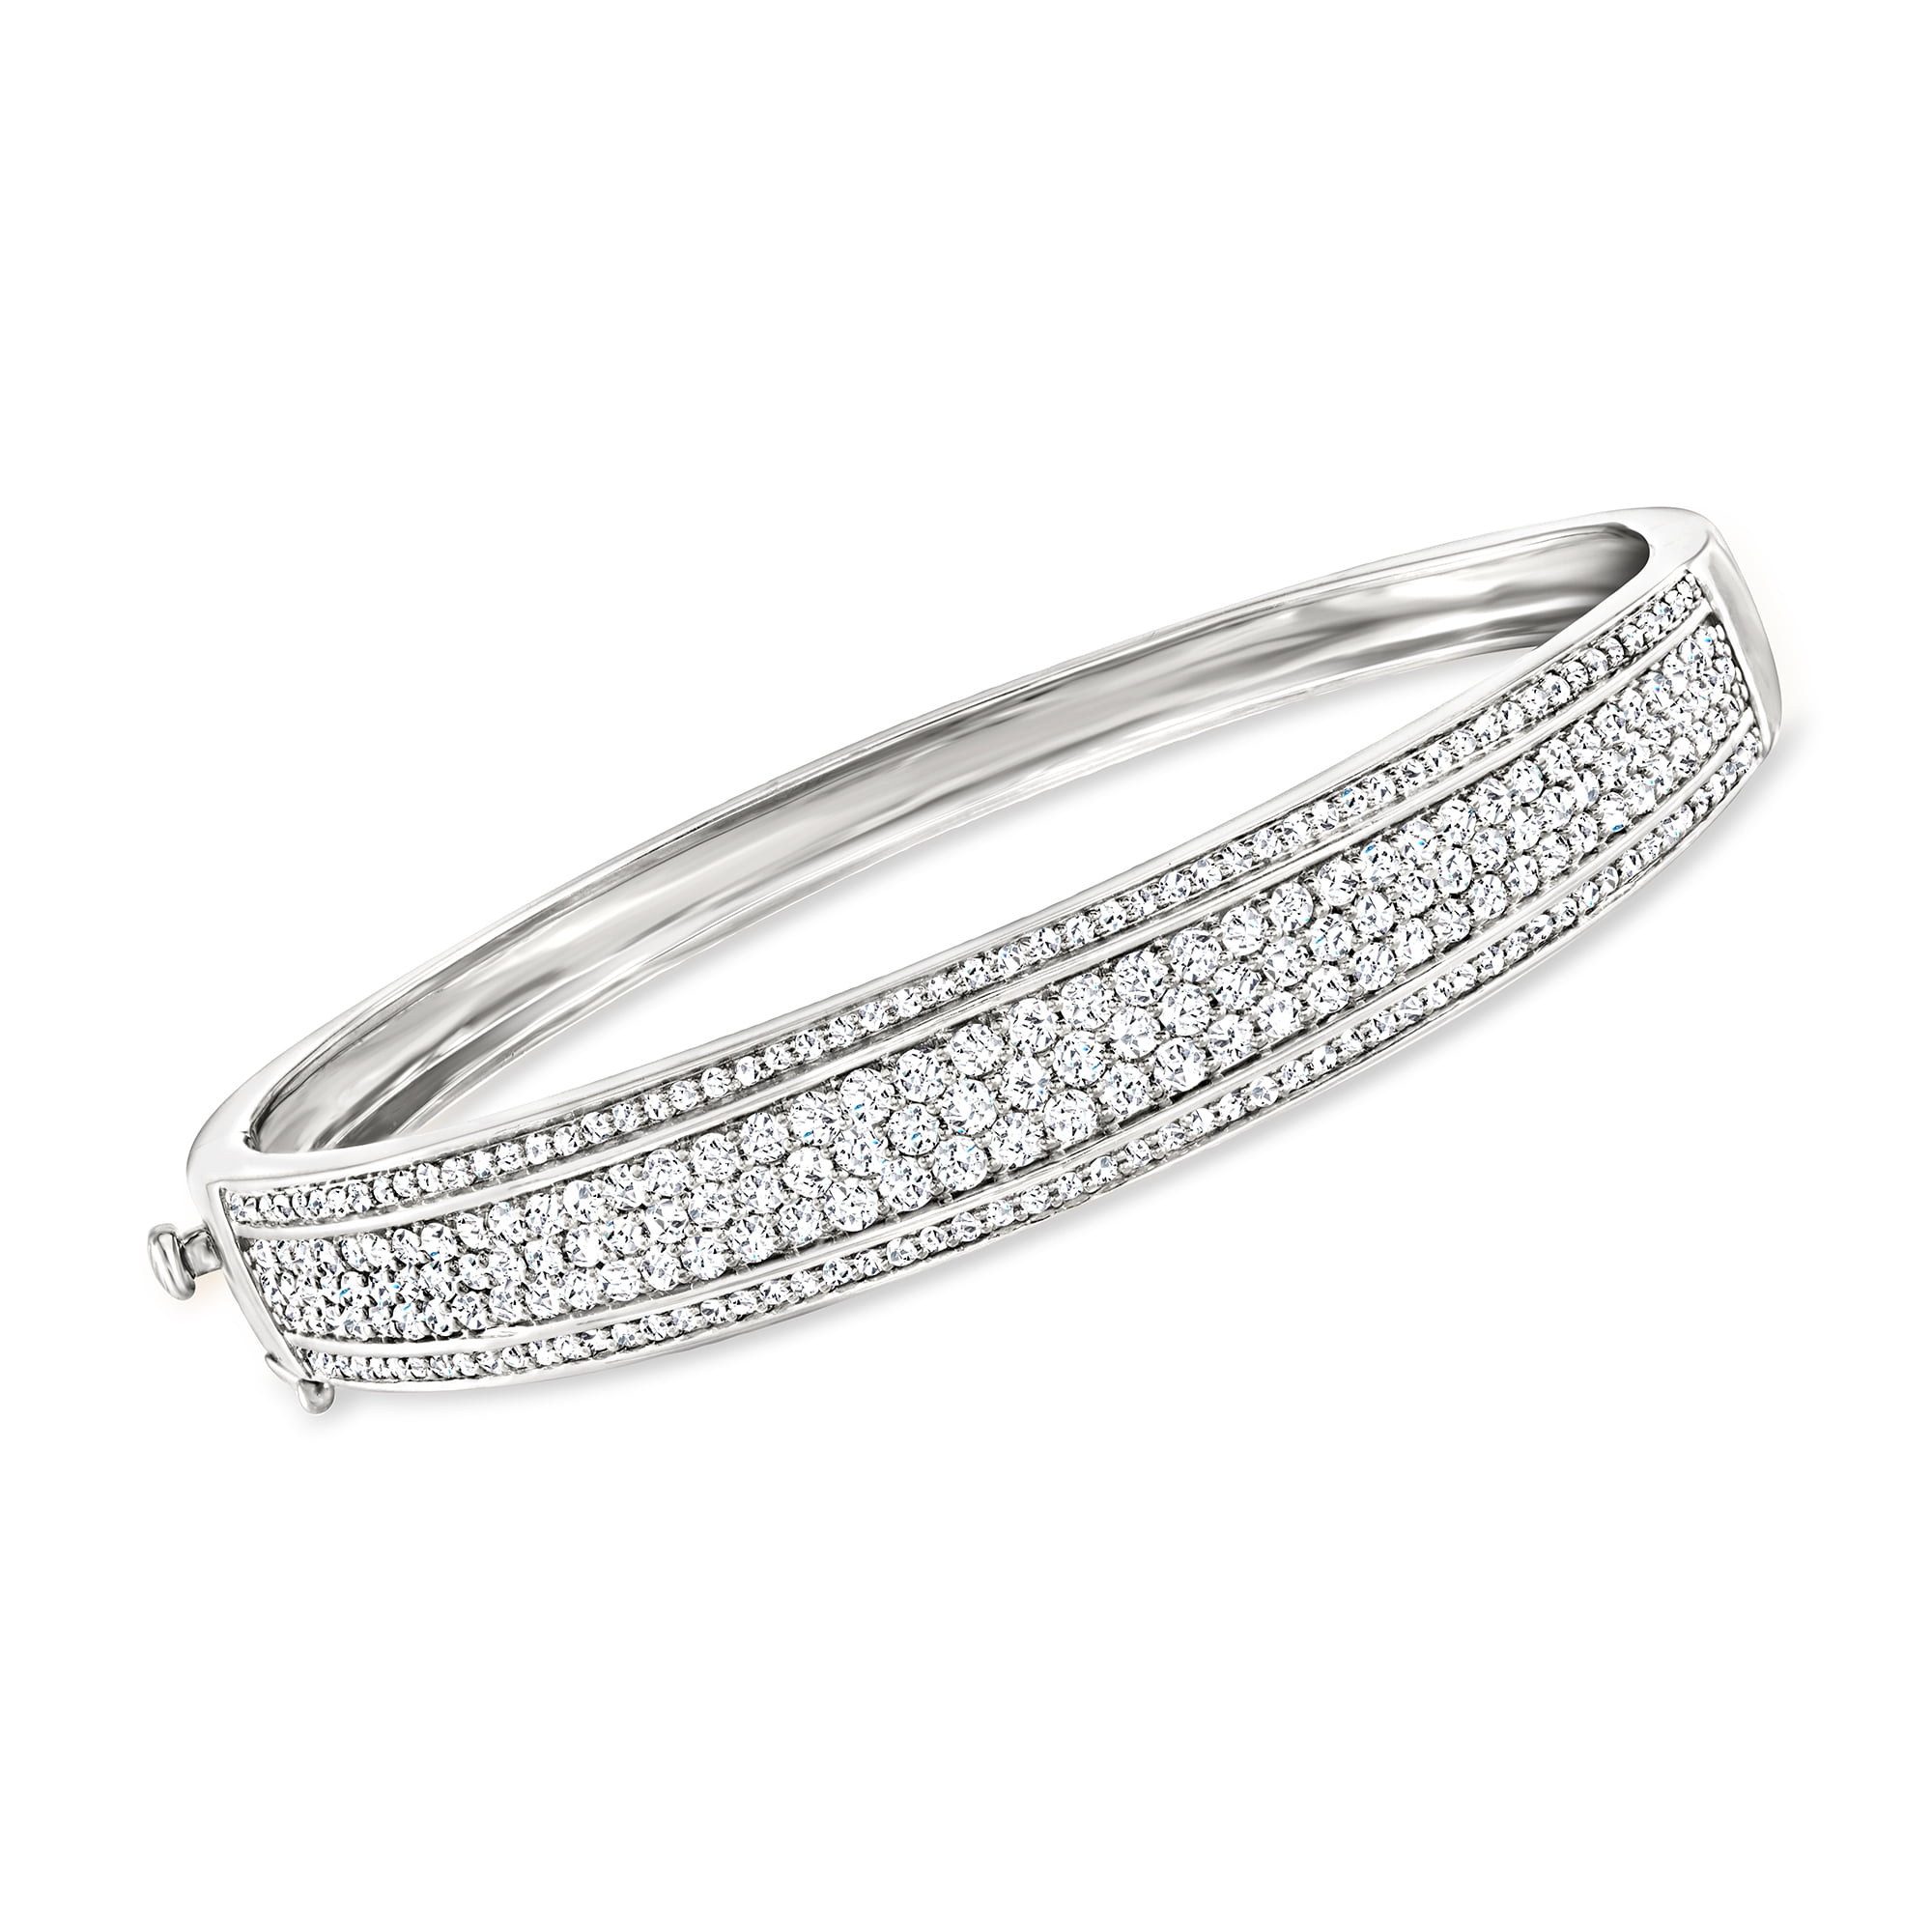 Pave Diamond Bangle 14k Gold Fine Wedding Bracelet Handmade Diamond Bracelet.  | eBay